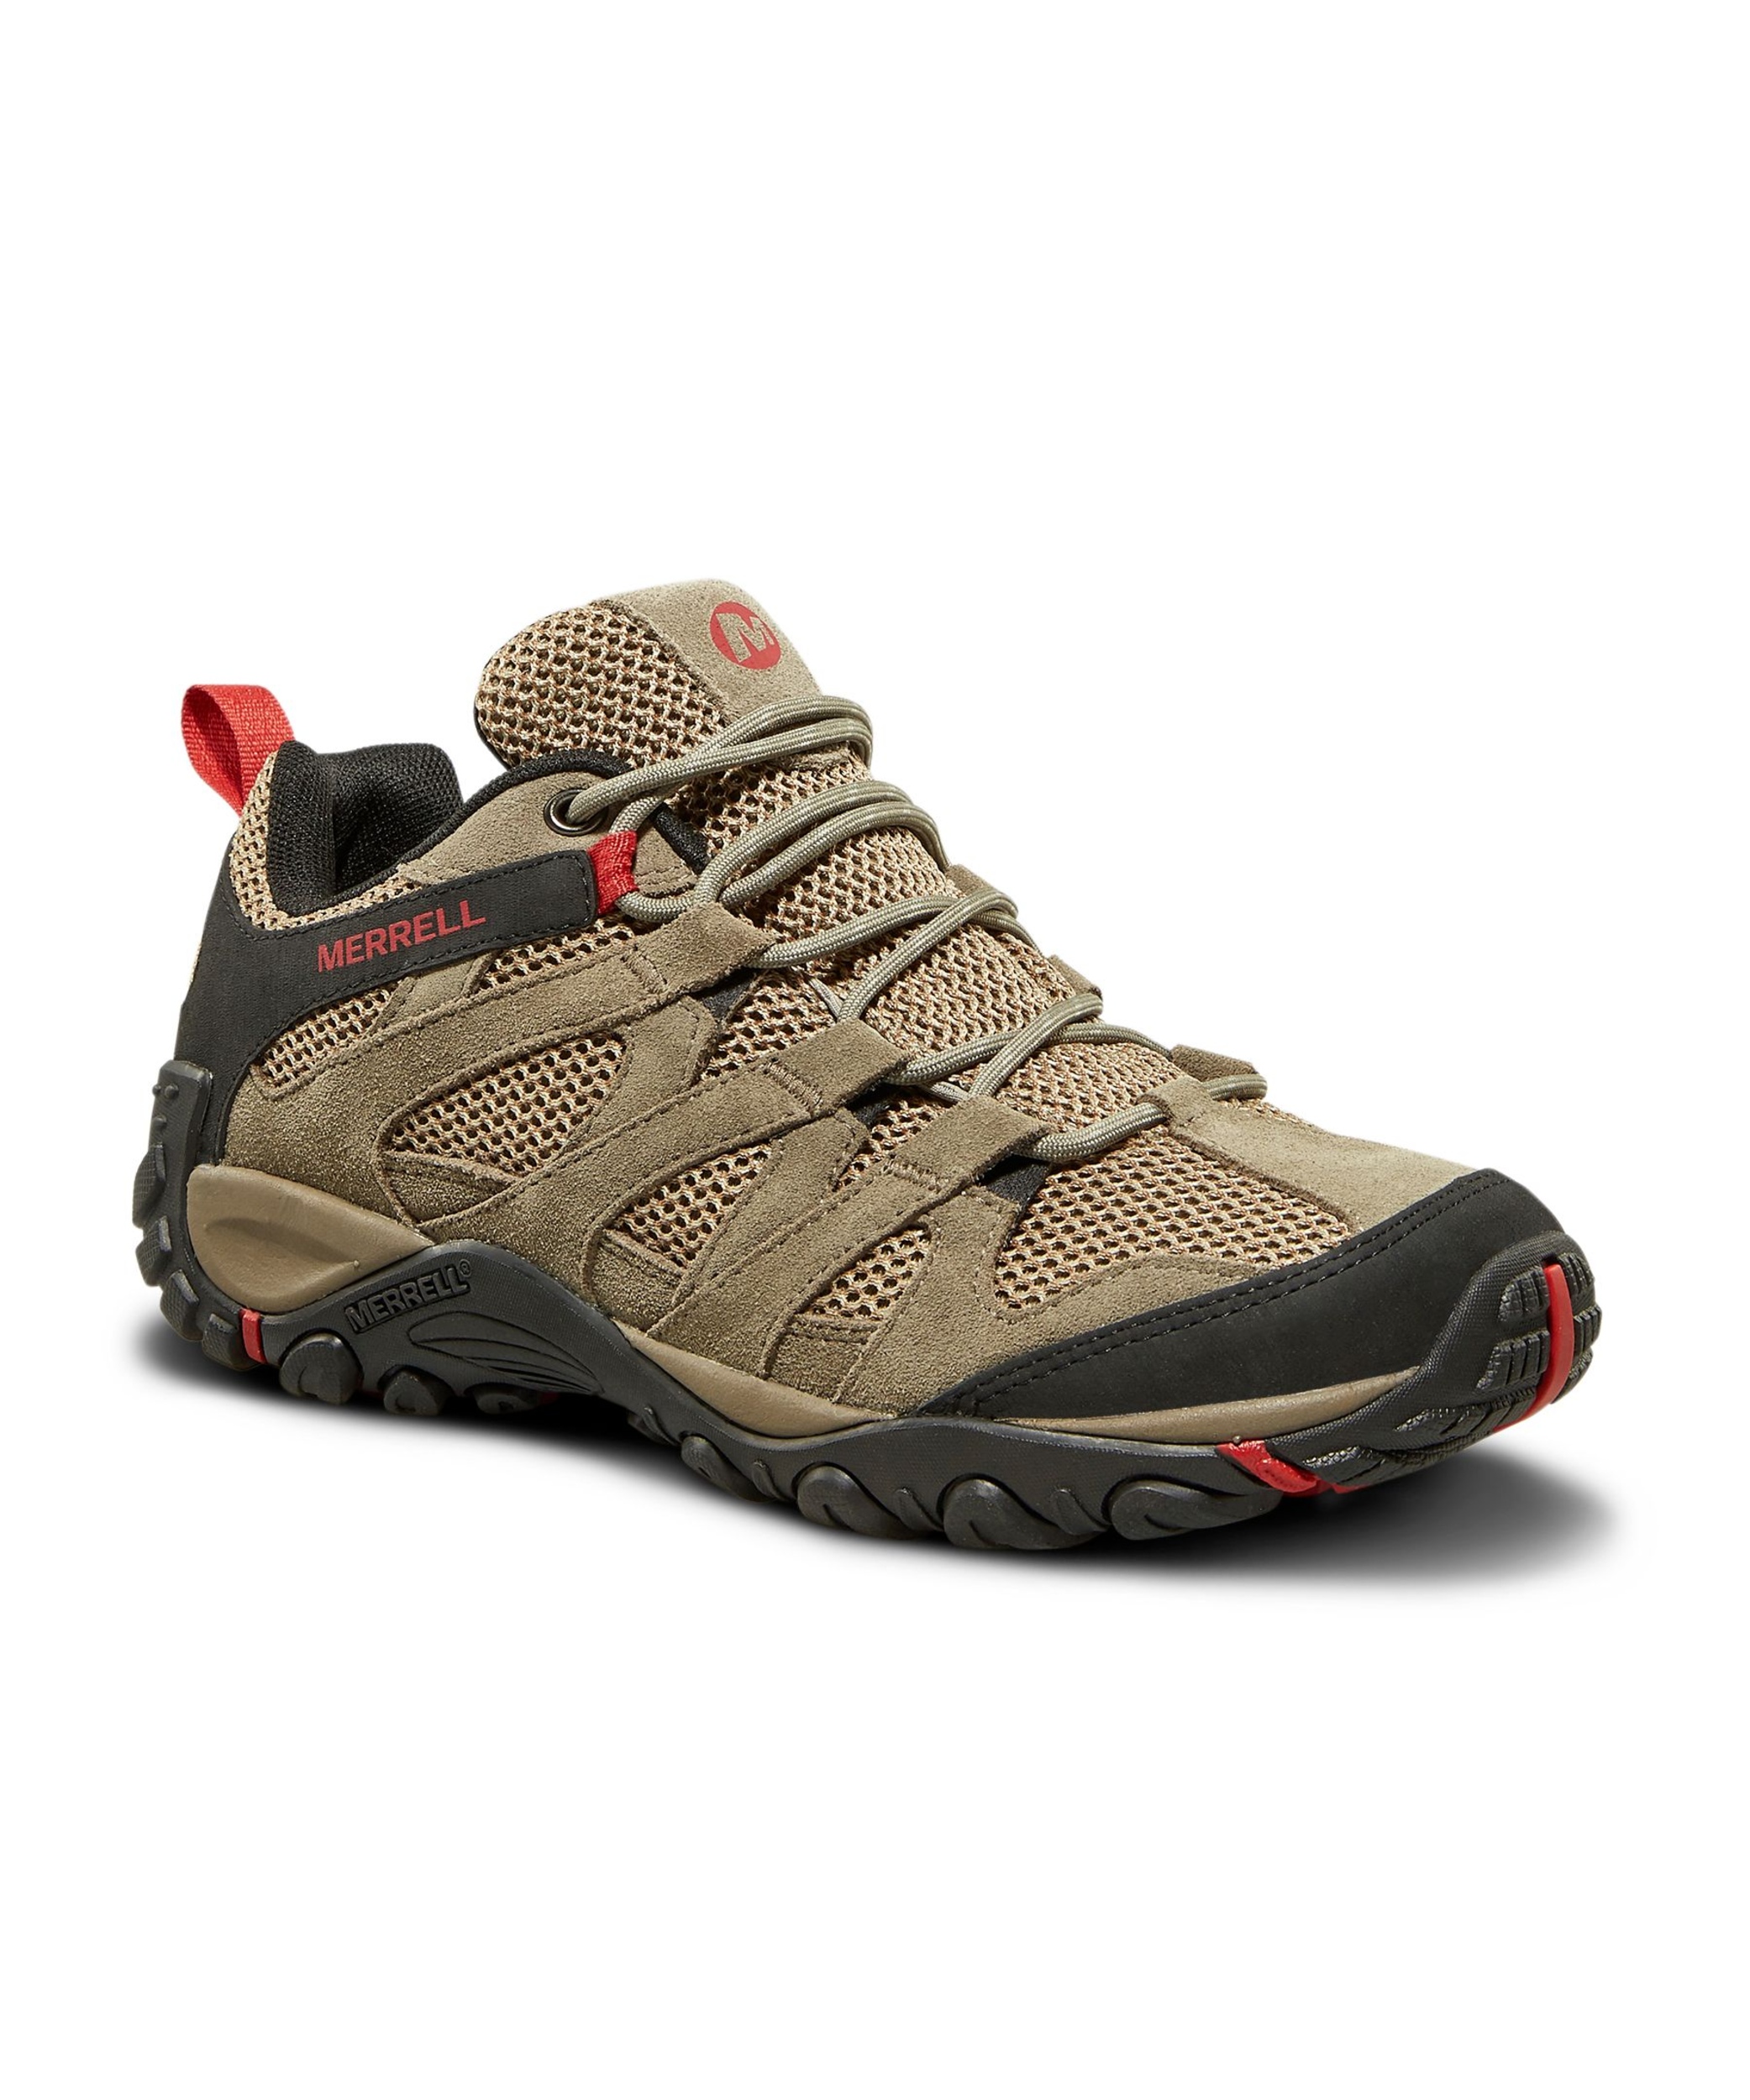 Merrell Men's Alverstone Boulder Hiking Shoes - Boulder | Marks